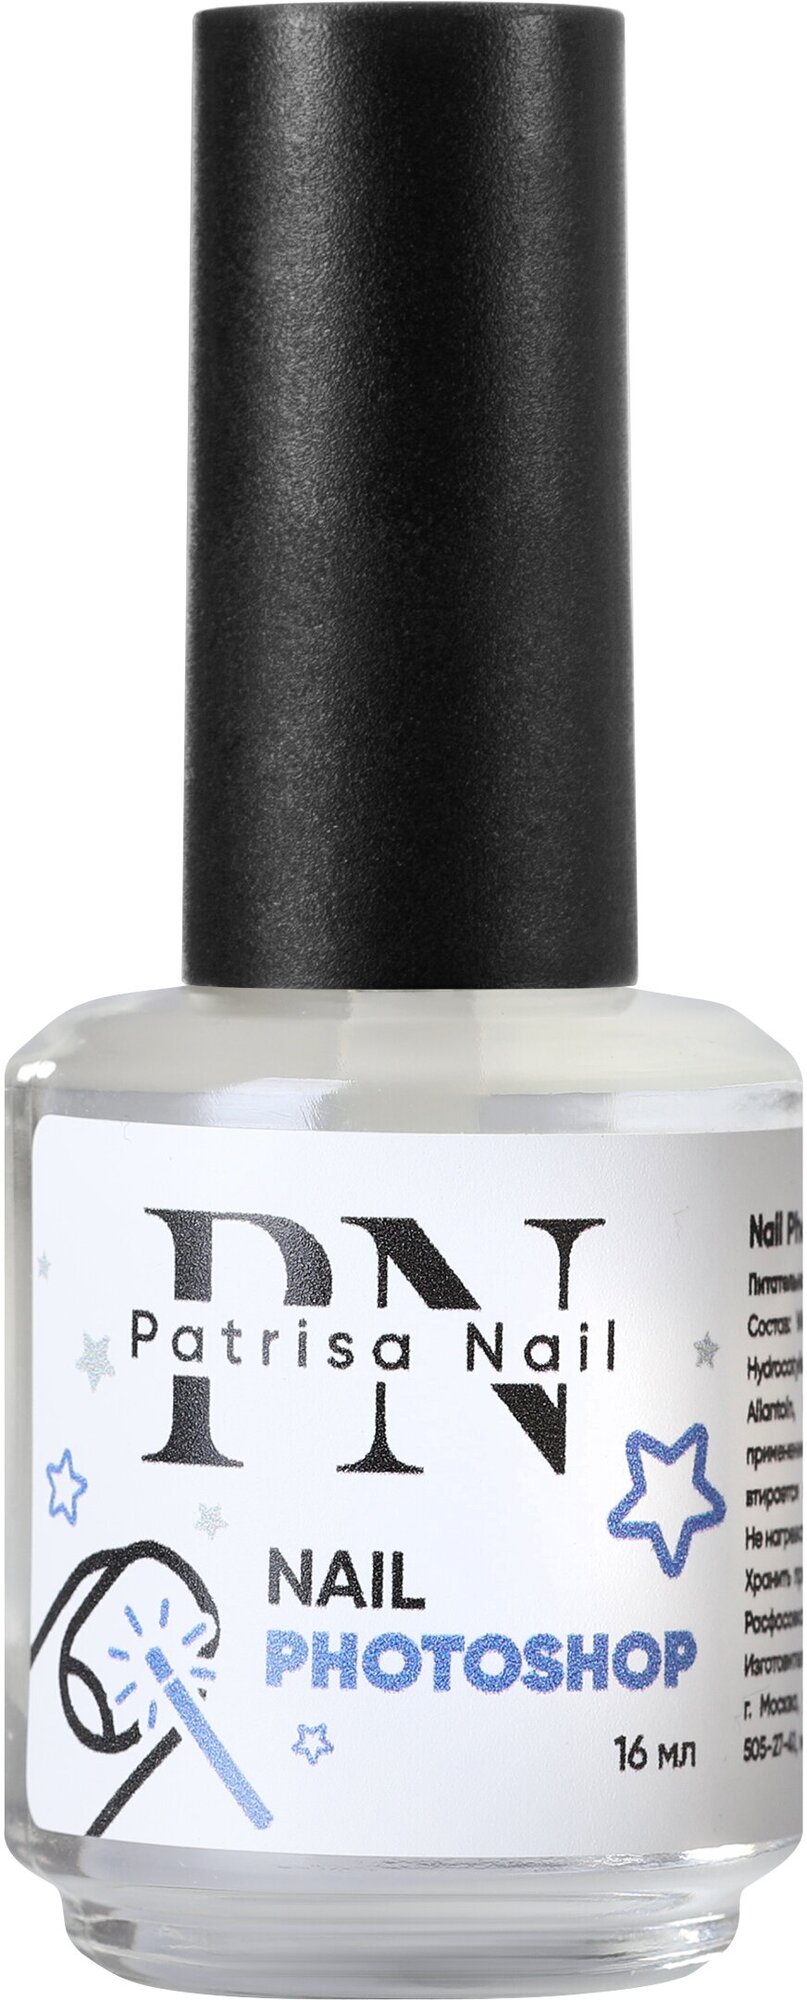 Питательное средство Patrisa nail, Nail Photoshop для ногтей и кутикулы , 16 мл